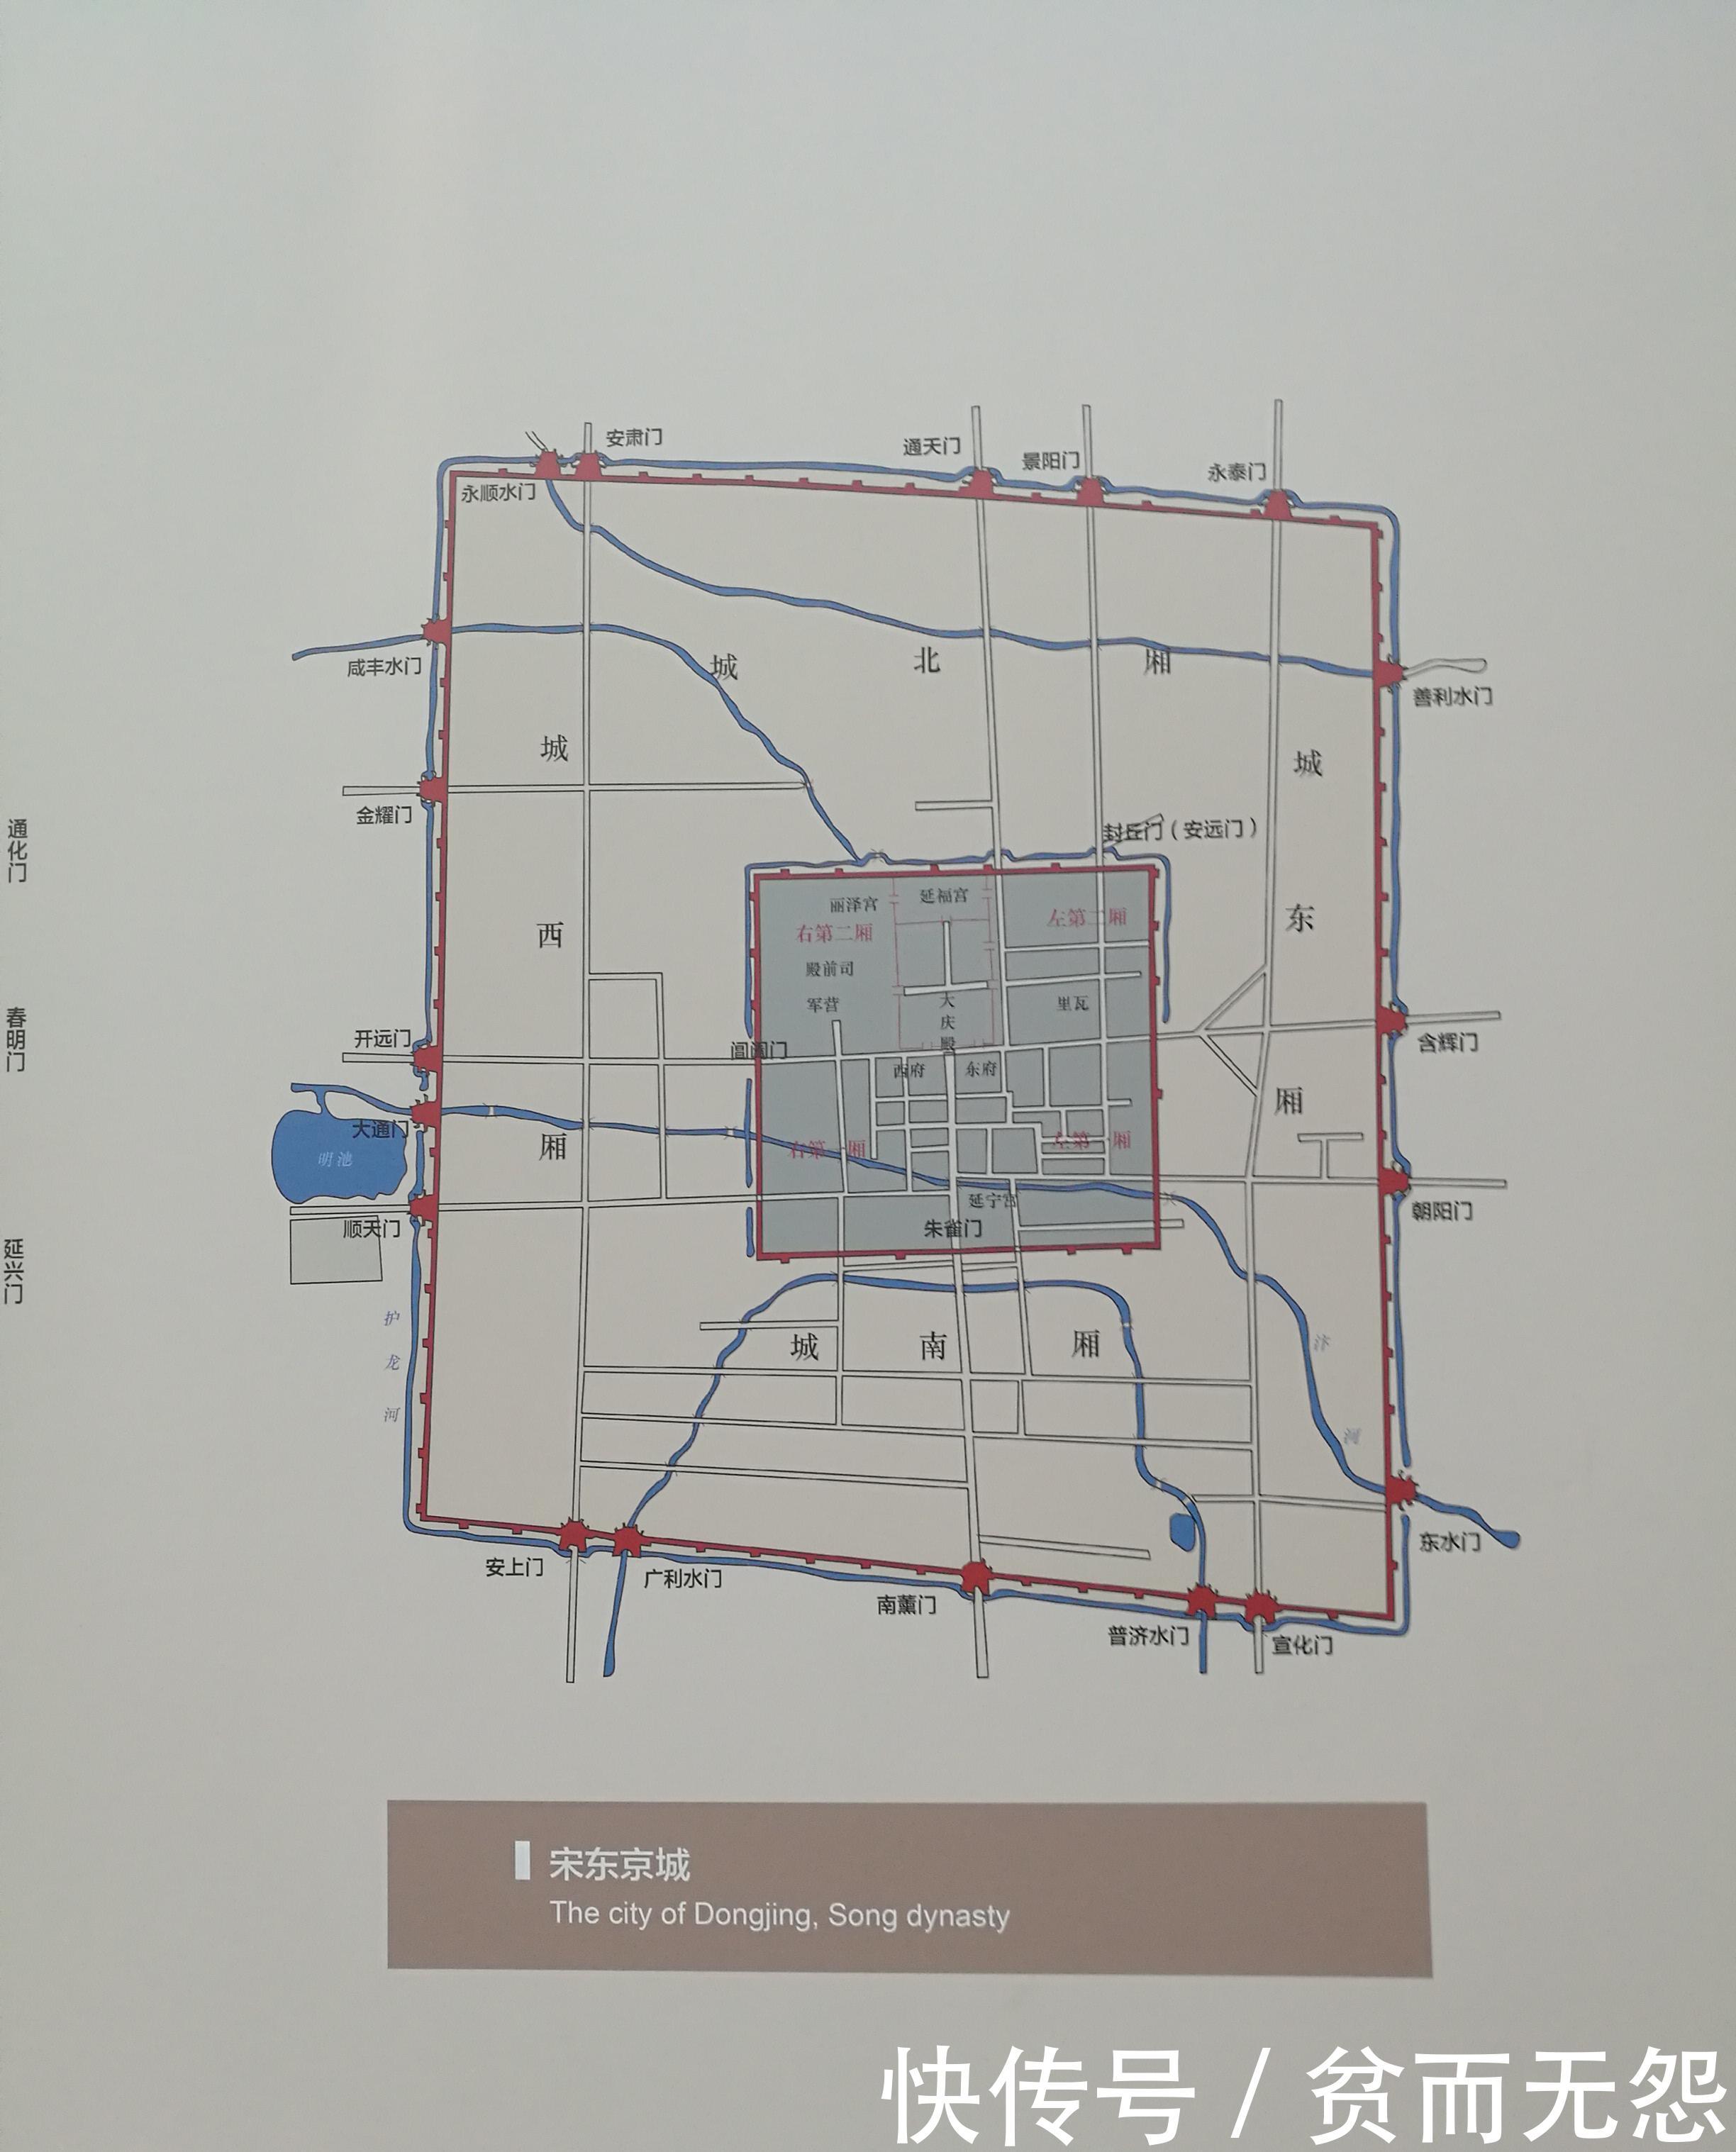 首都博物馆展示北京中轴线的形成过程,也为了